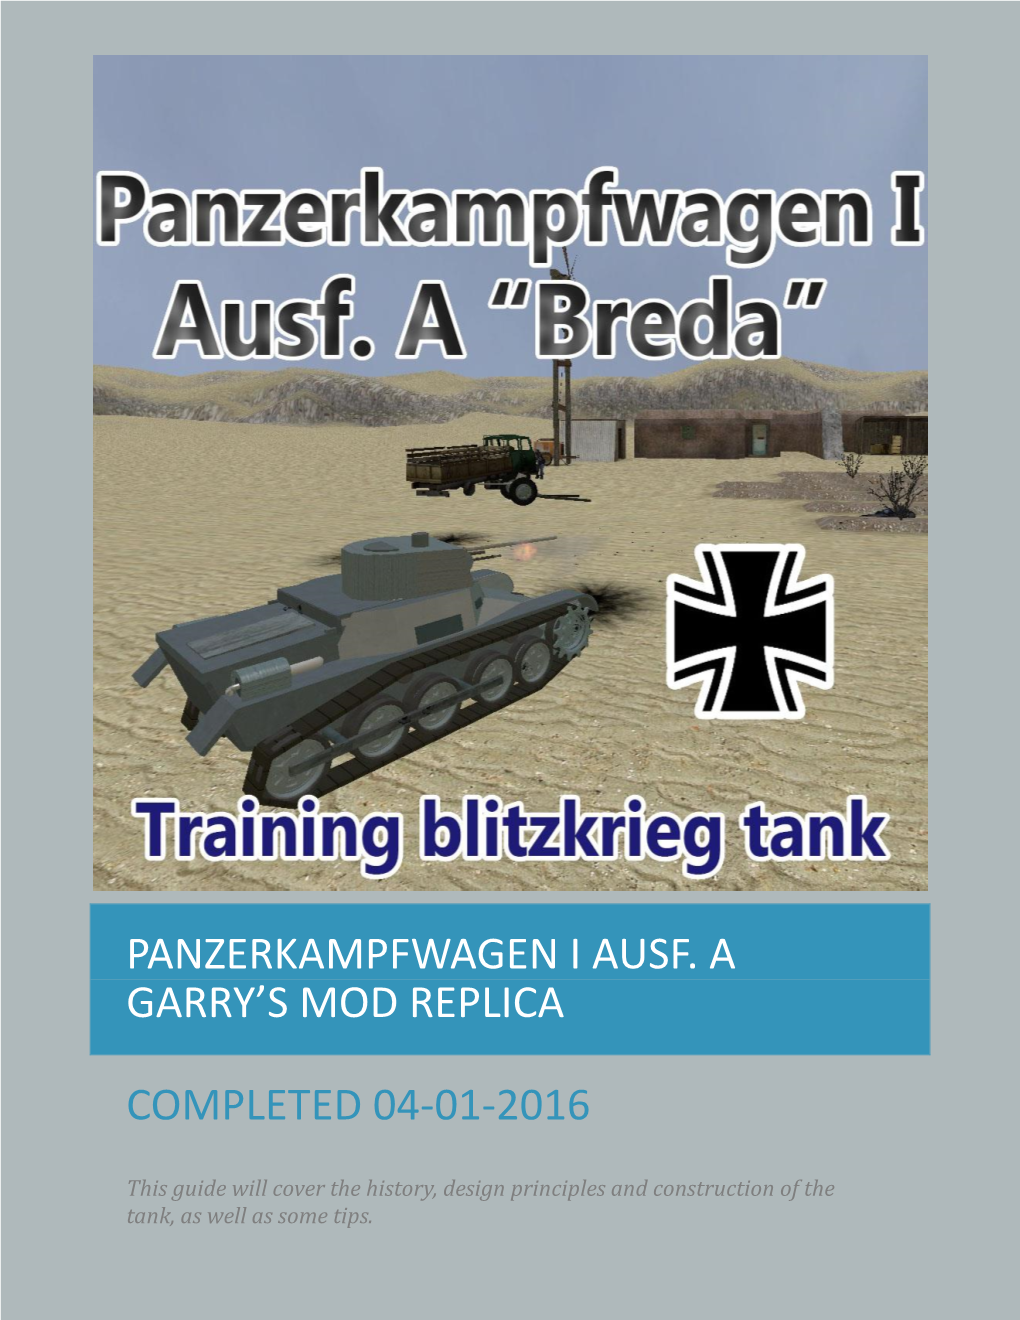 Panzerkampfwagen I Ausf. a Garry's Mod Replica